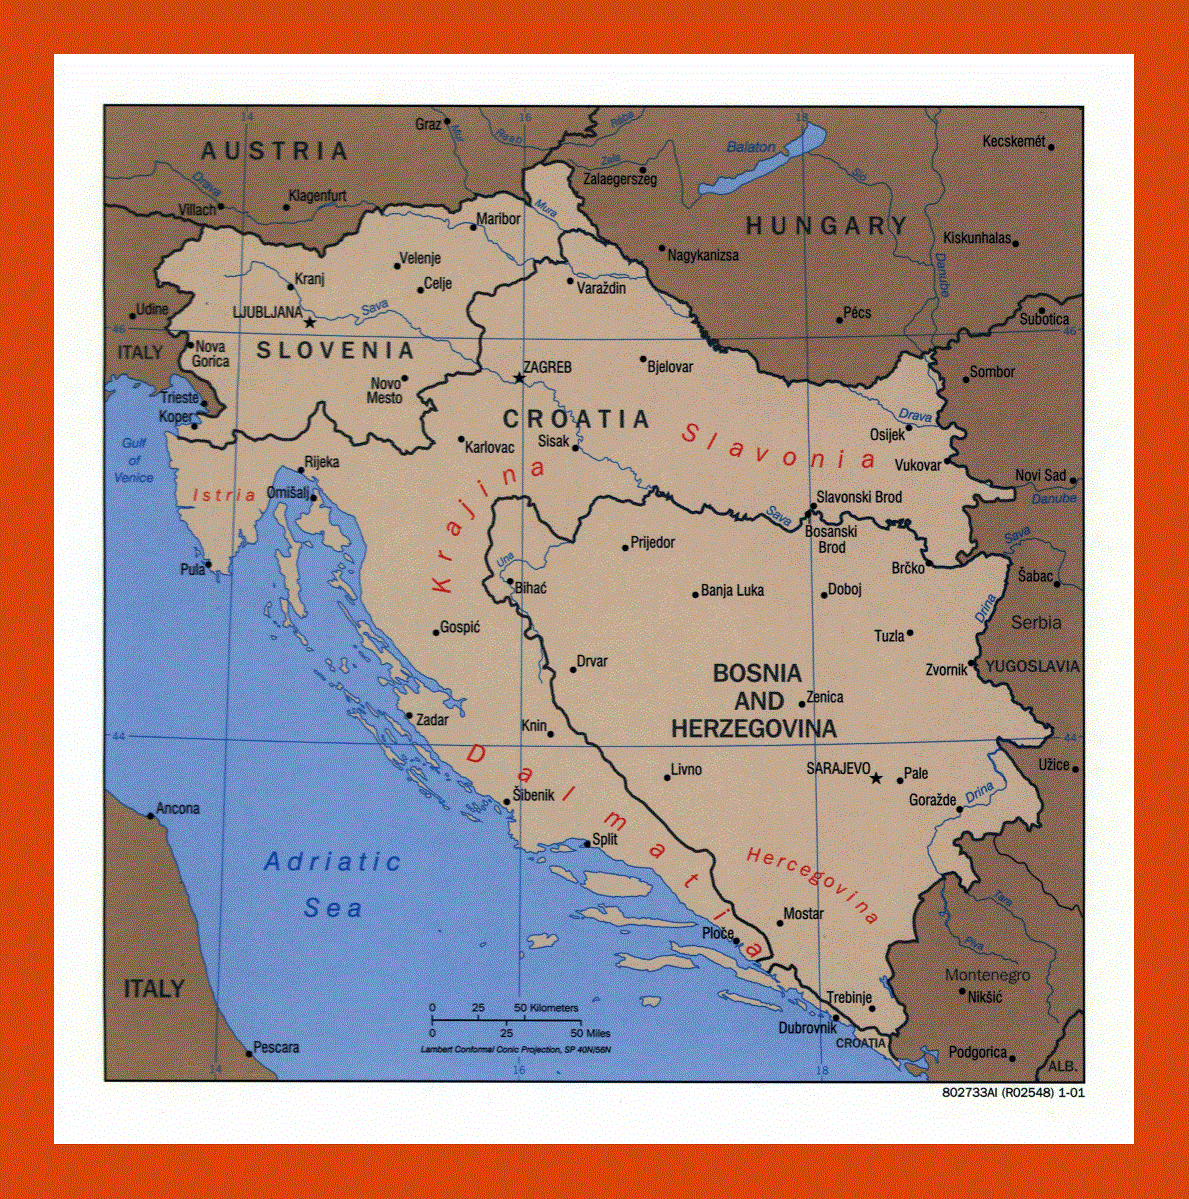 Political map of Slovenia, Croatia and Bosnia and Herzegovina